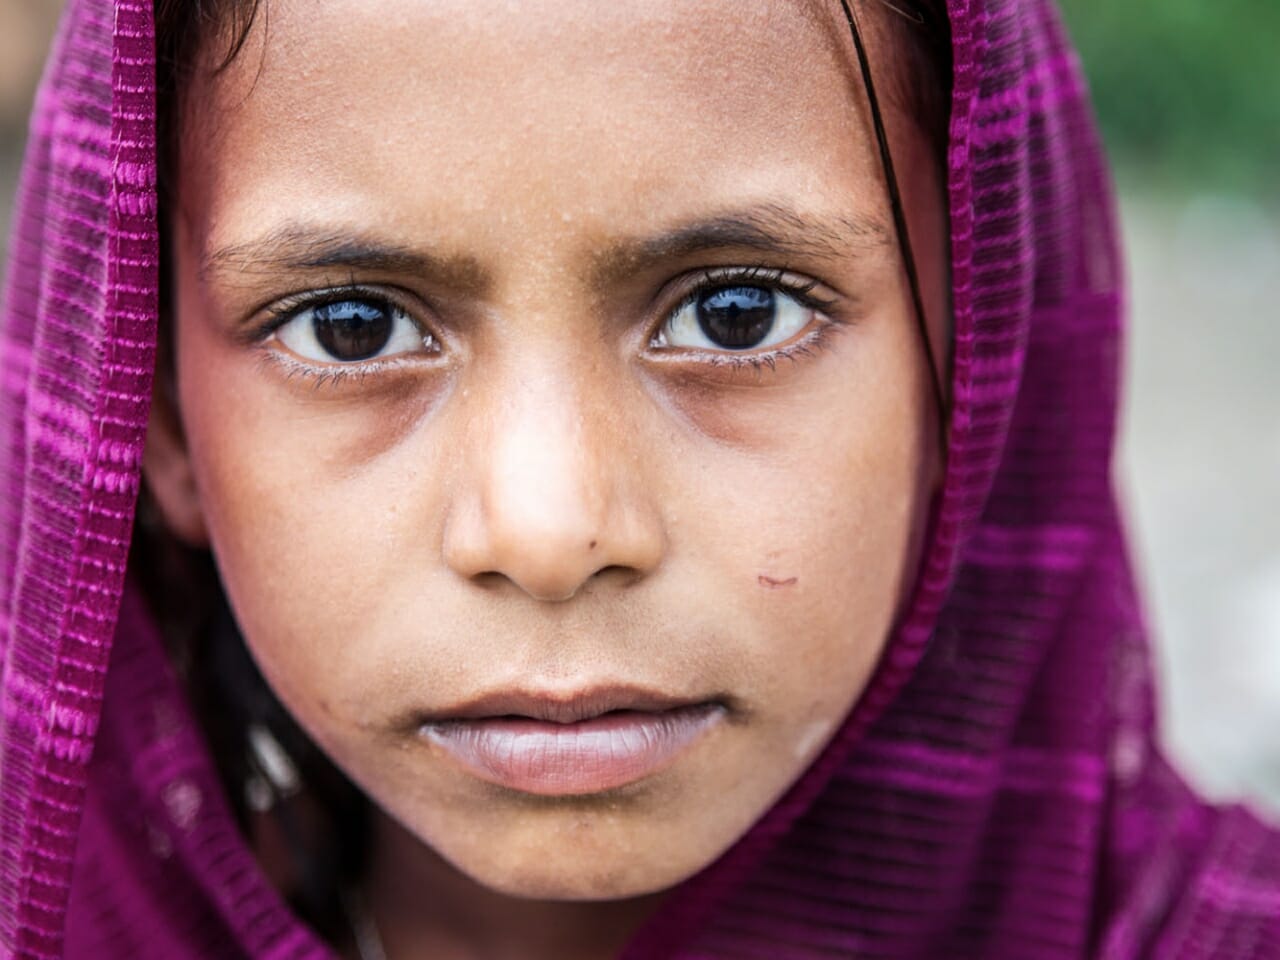 PHOTO ESSAY - Rohingya